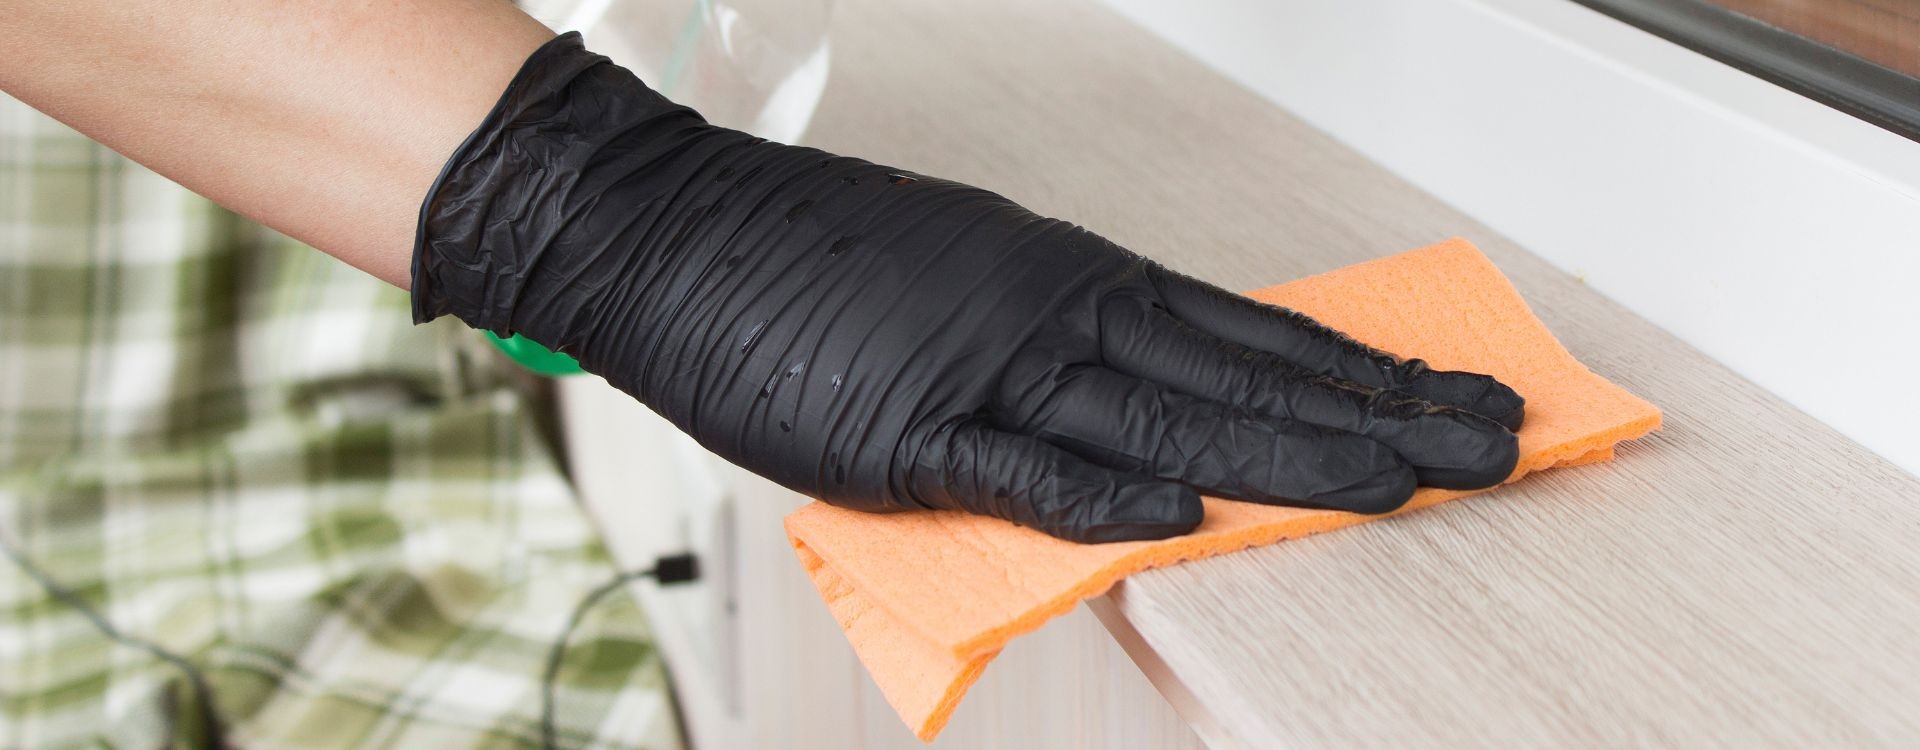 Ventajas de usar guantes de nitrilo